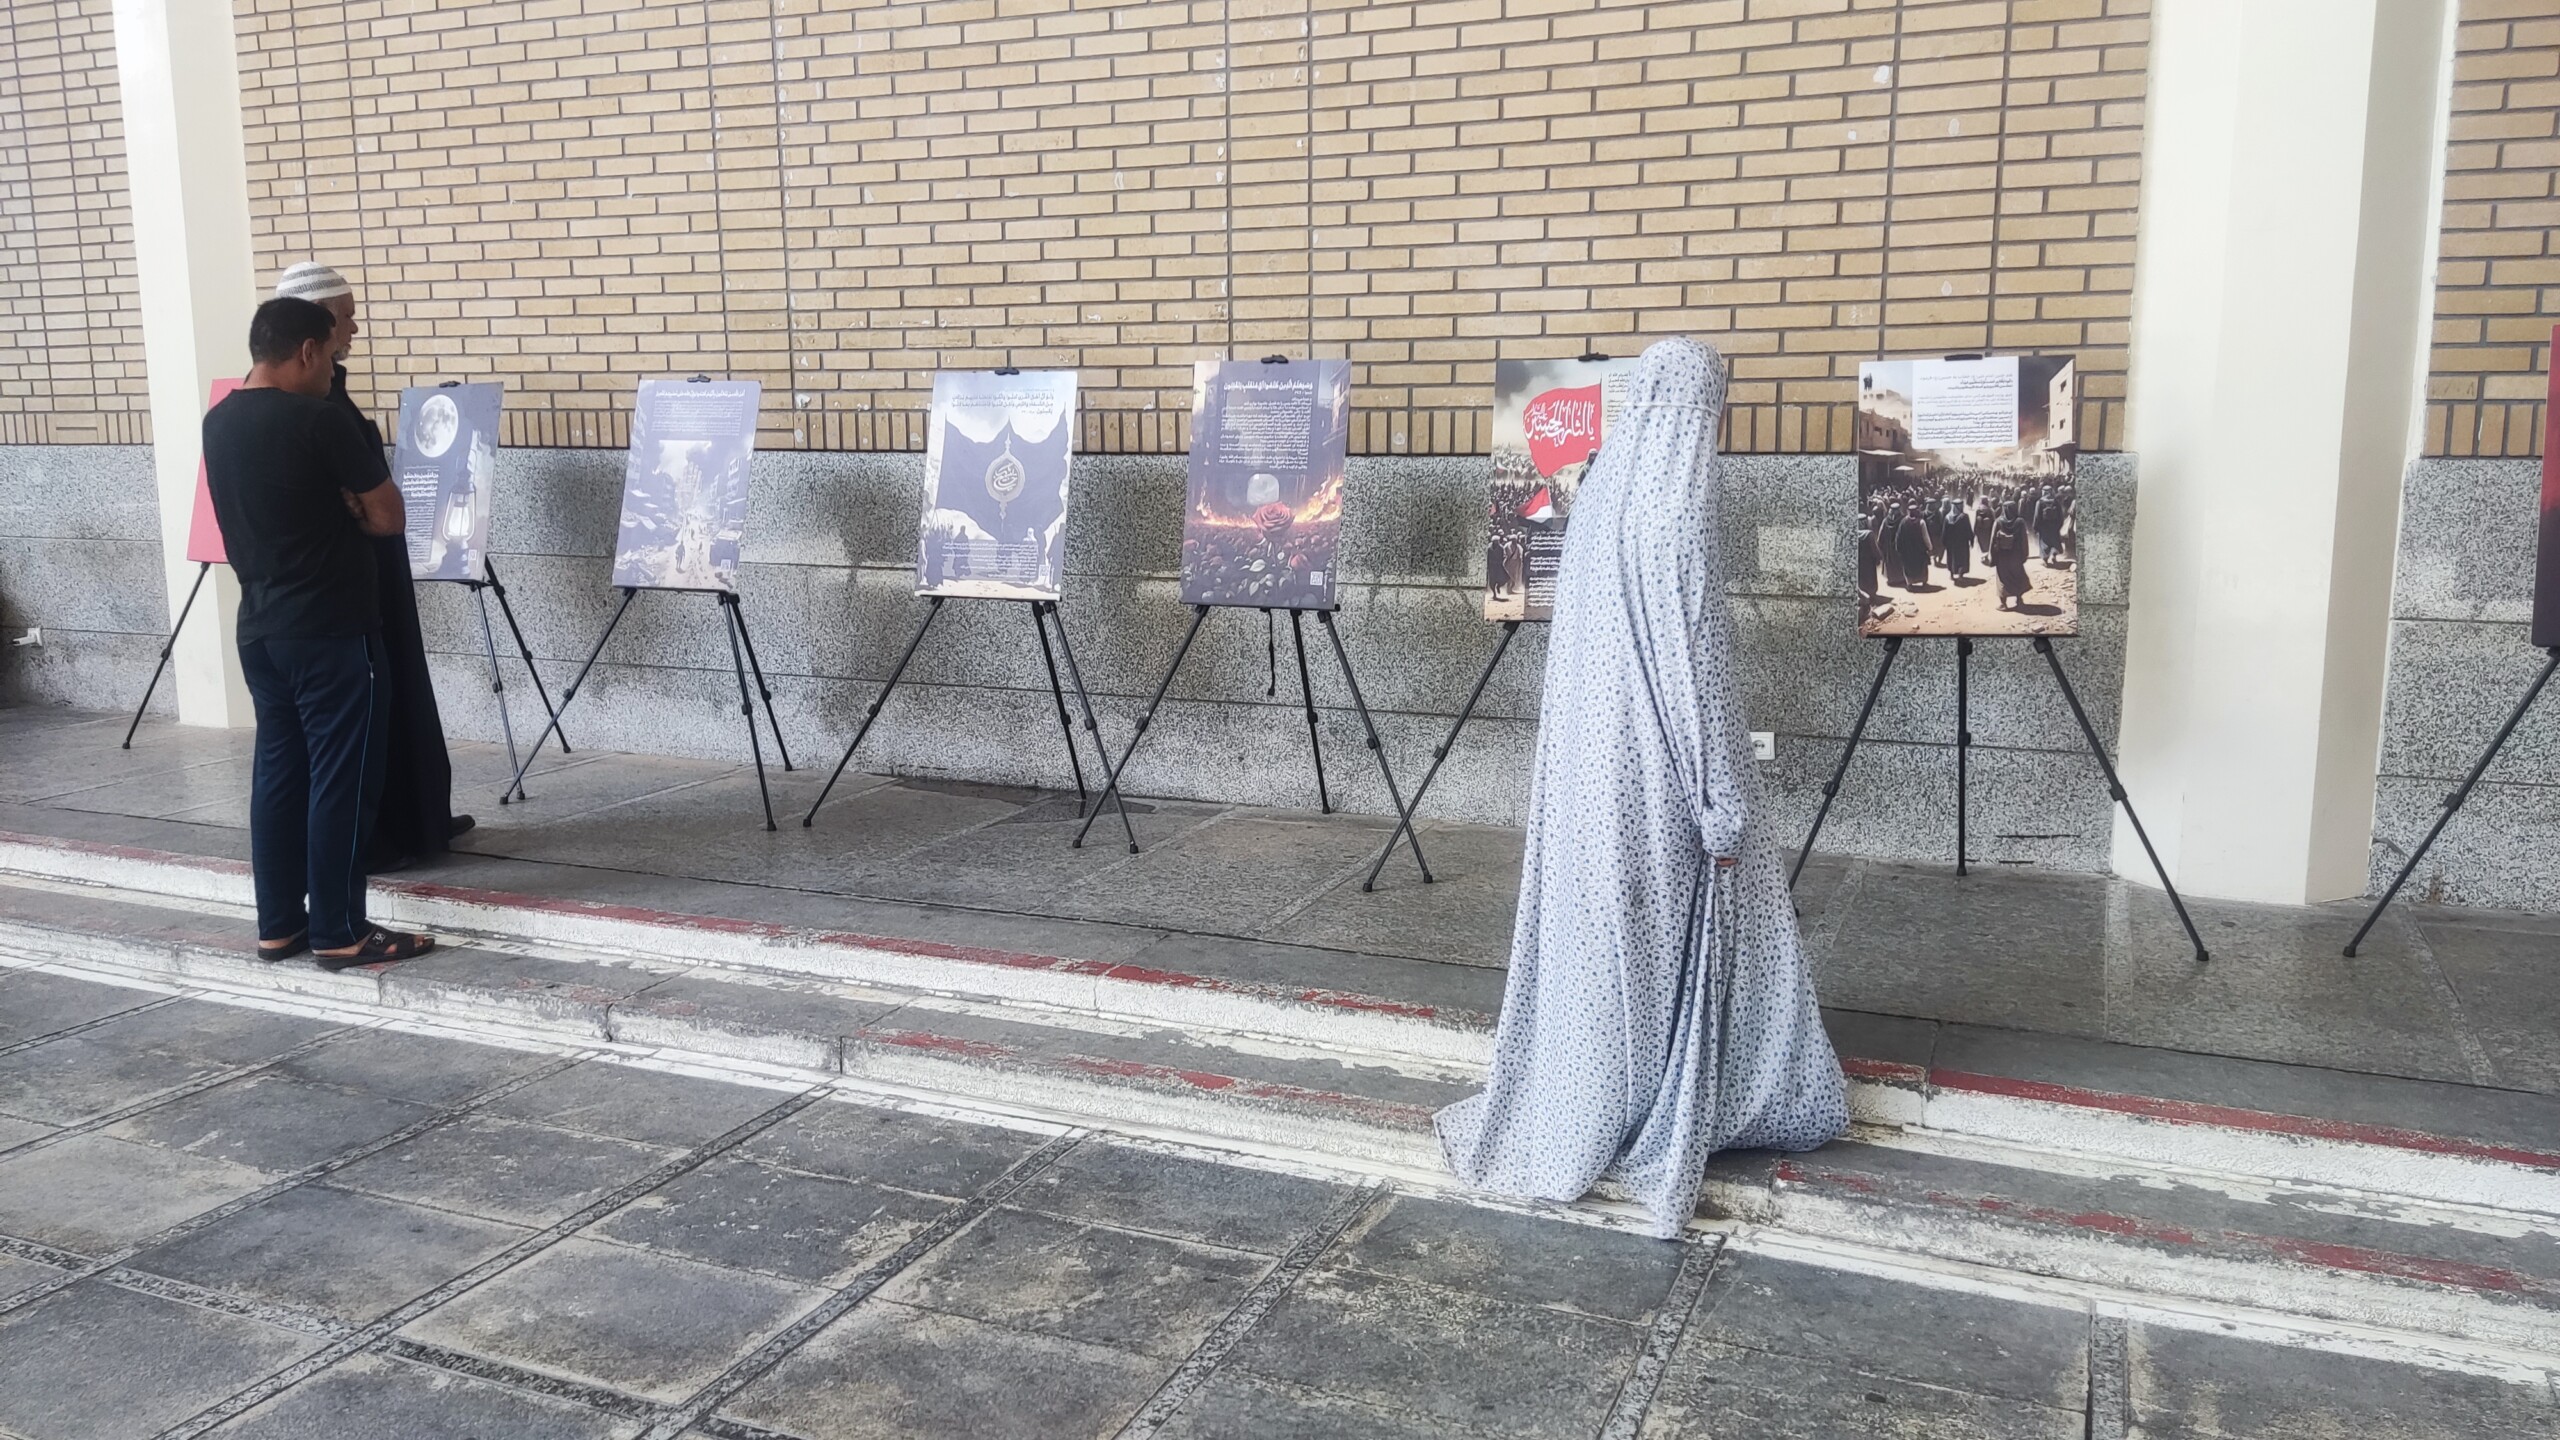  نمایشگاه عکس «روایت مقاومت» در حرم حضرت معصومه (س) برپا شد